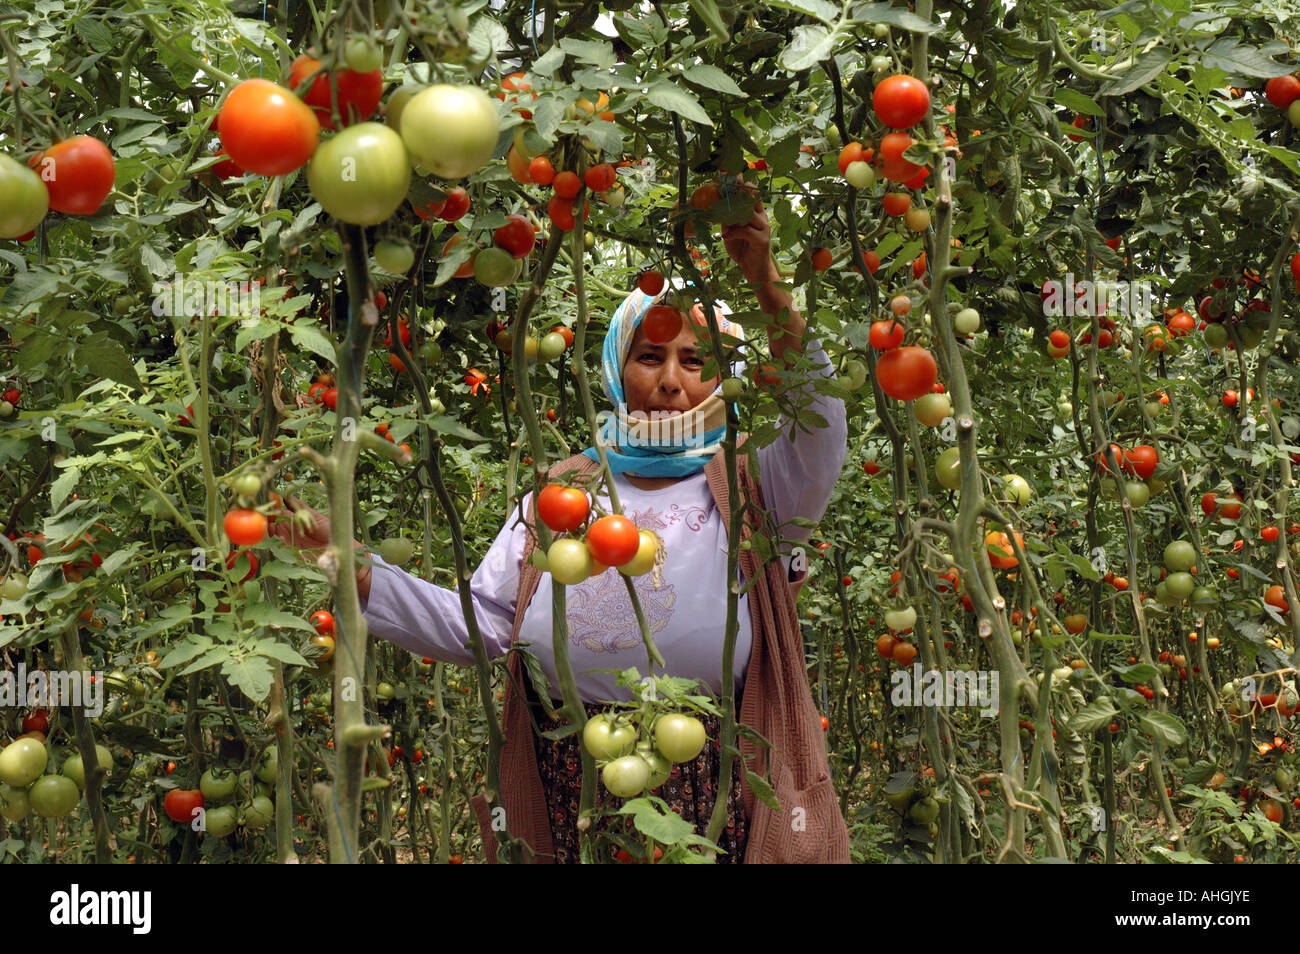 Les travailleurs migrants picking tomatoes des émissions de près de dans le sud de la Turquie Yesilkoy. Banque D'Images